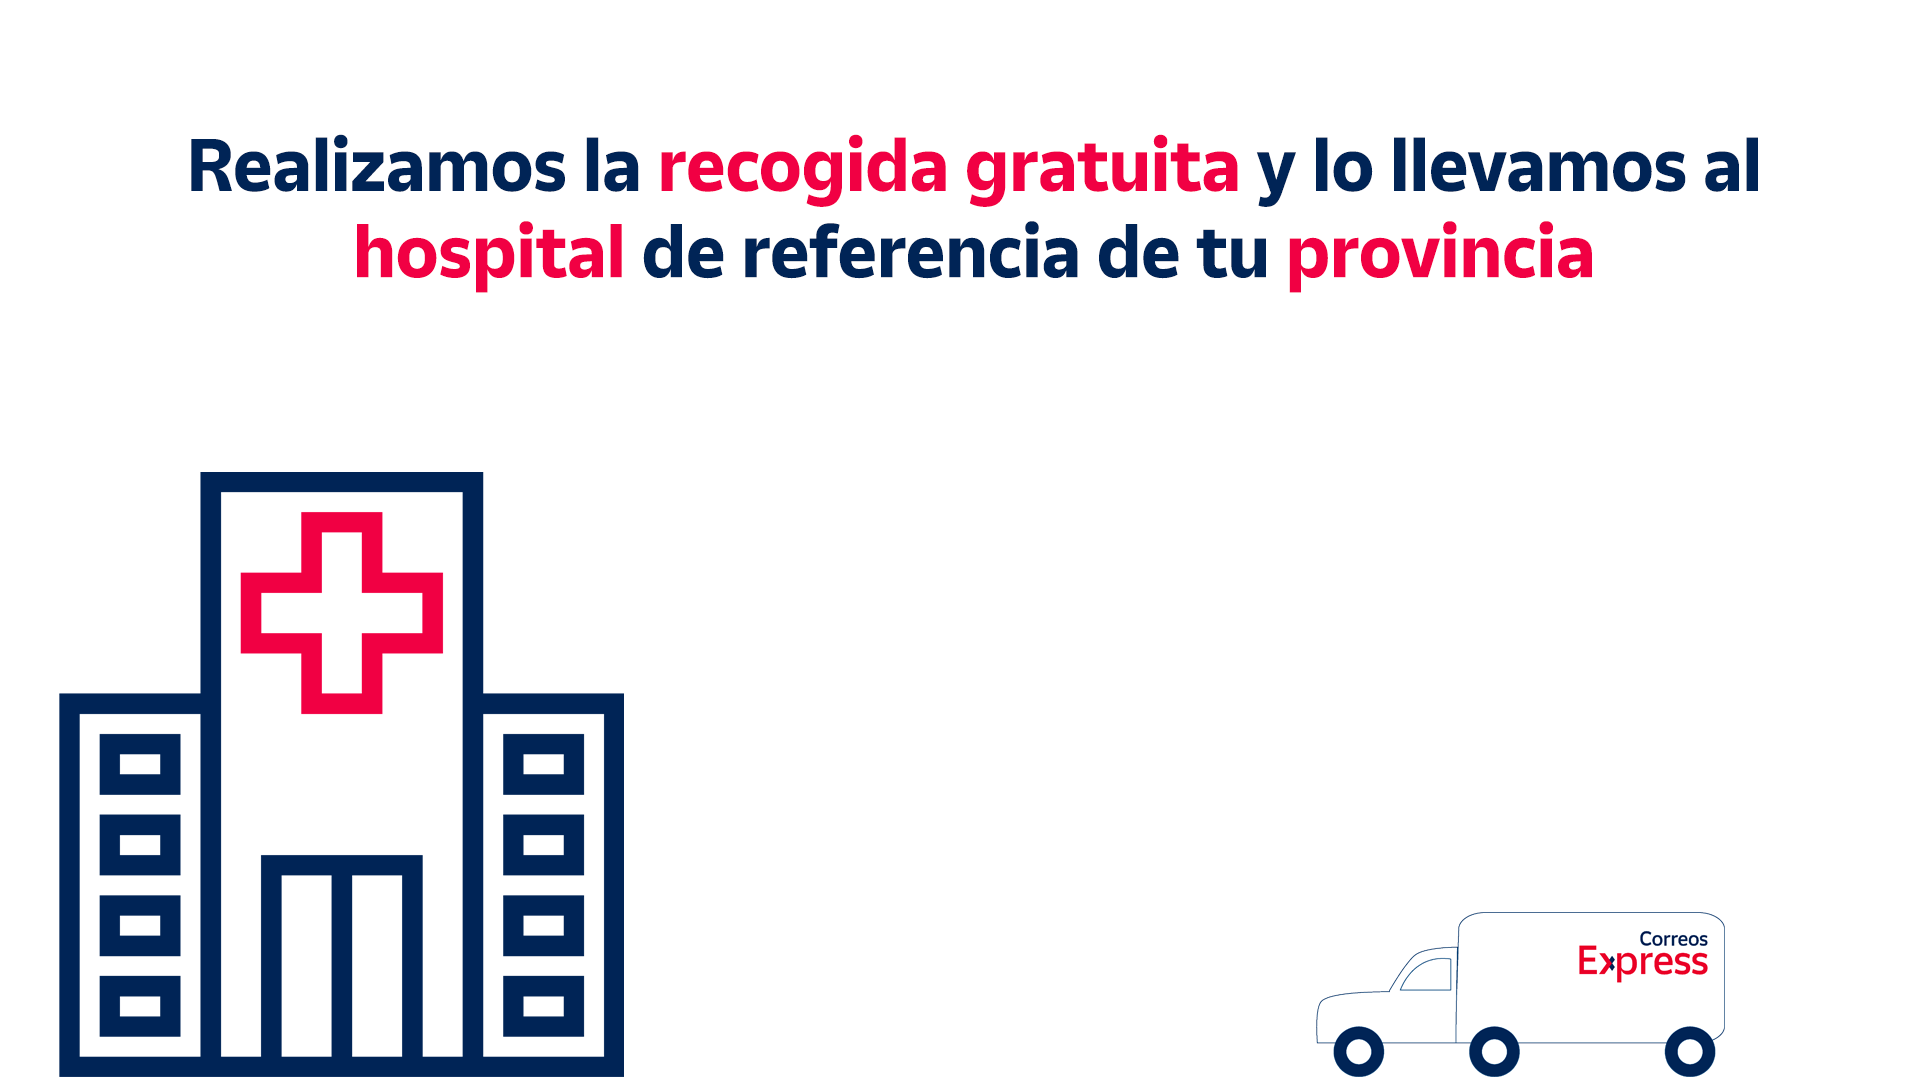 Correos Express realizará a partir de hoy envíos gratis de material sanitario a hospitales de referencia de toda España